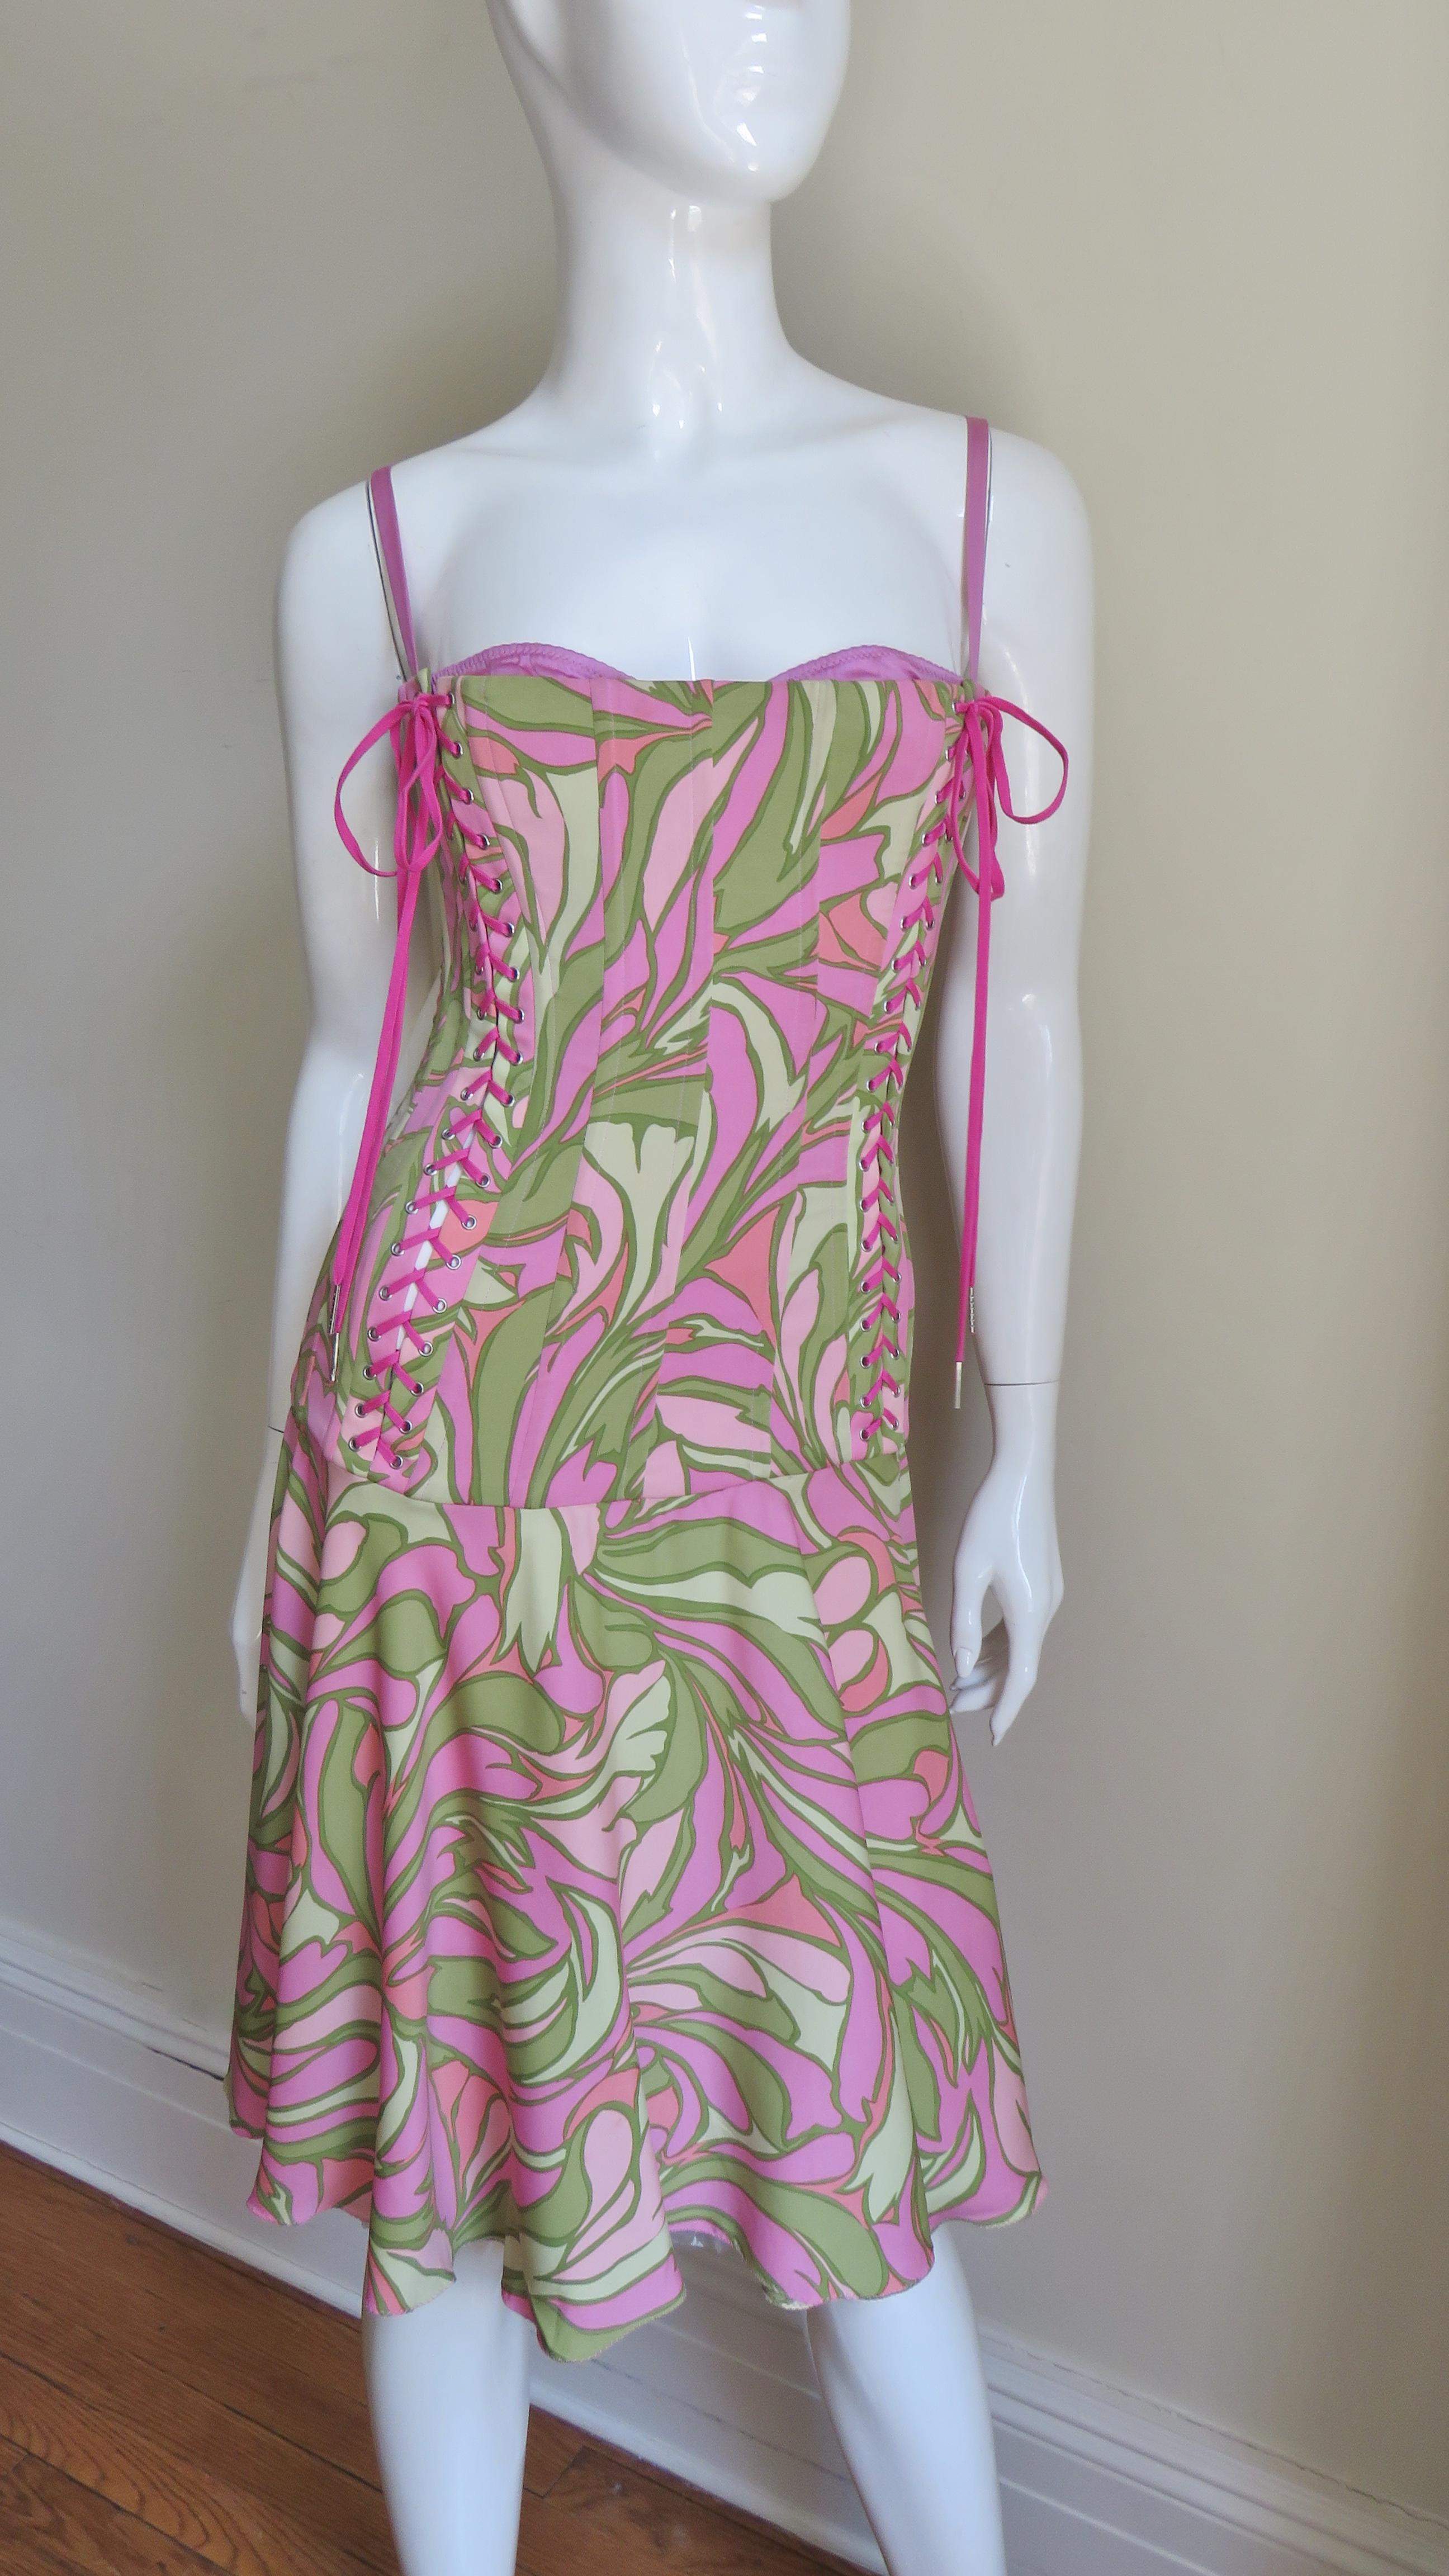 Ein wunderschönes Kleid aus feiner Stretch-Seide mit geometrischem Druck in Rosa und Grün von Dolce & Gabbana.  Das Mieder ist mit vertikalen Stäbchen versehen, bis zu den Hüften tailliert und mit einem verstellbaren rosa BH mit verstellbaren